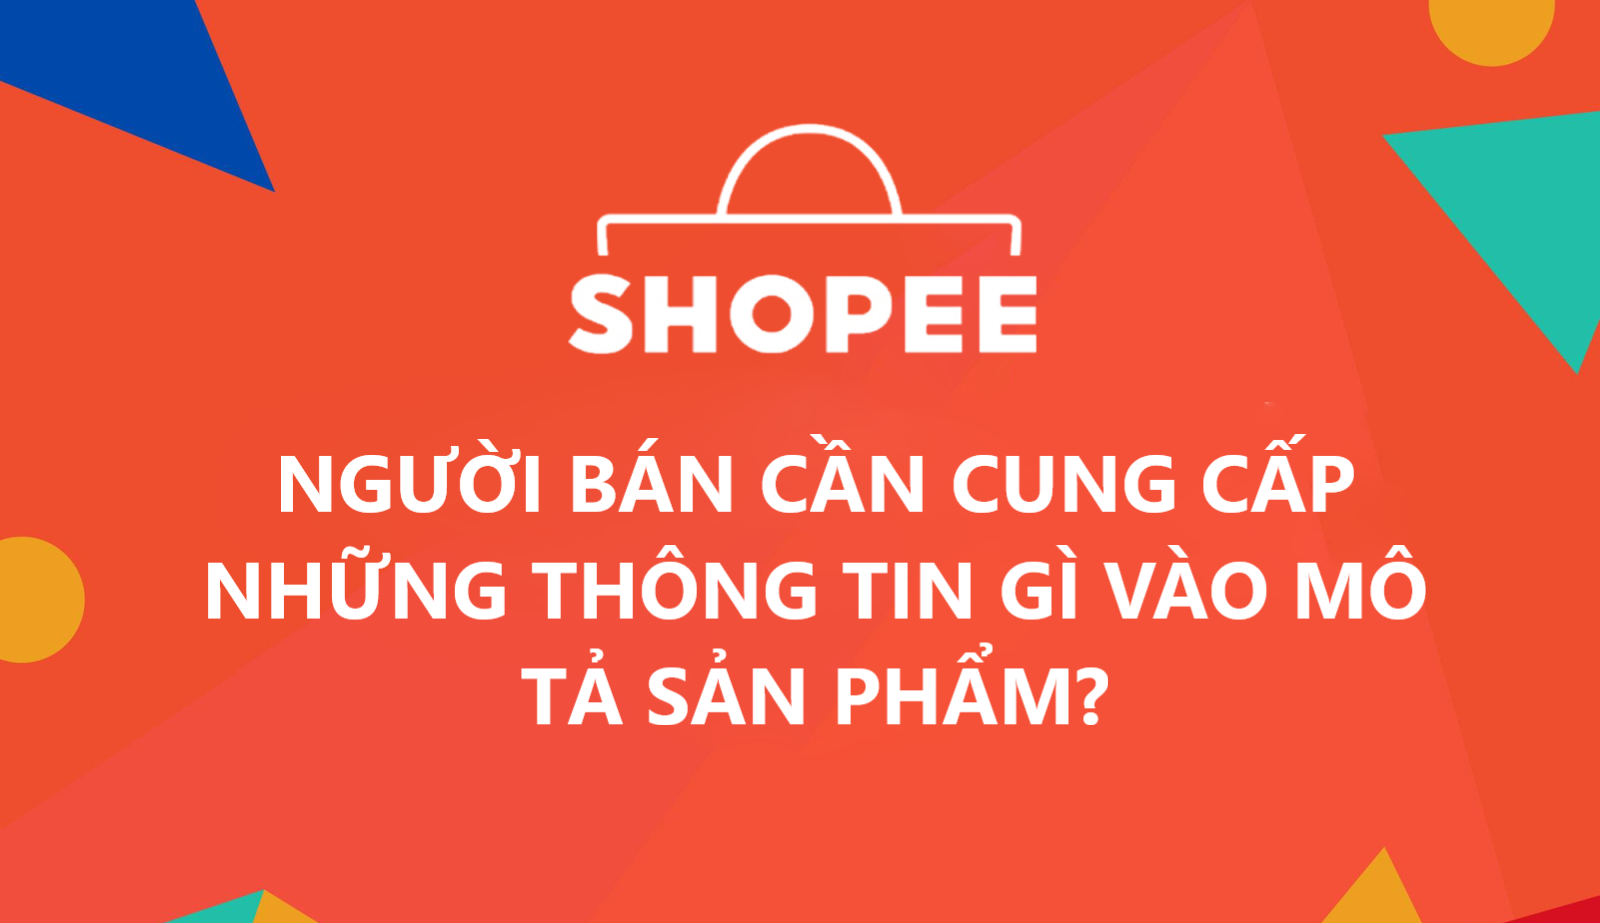 Người bán cần cung cấp những thông tin gì vào Mô tả sản phẩm trên Shopee?